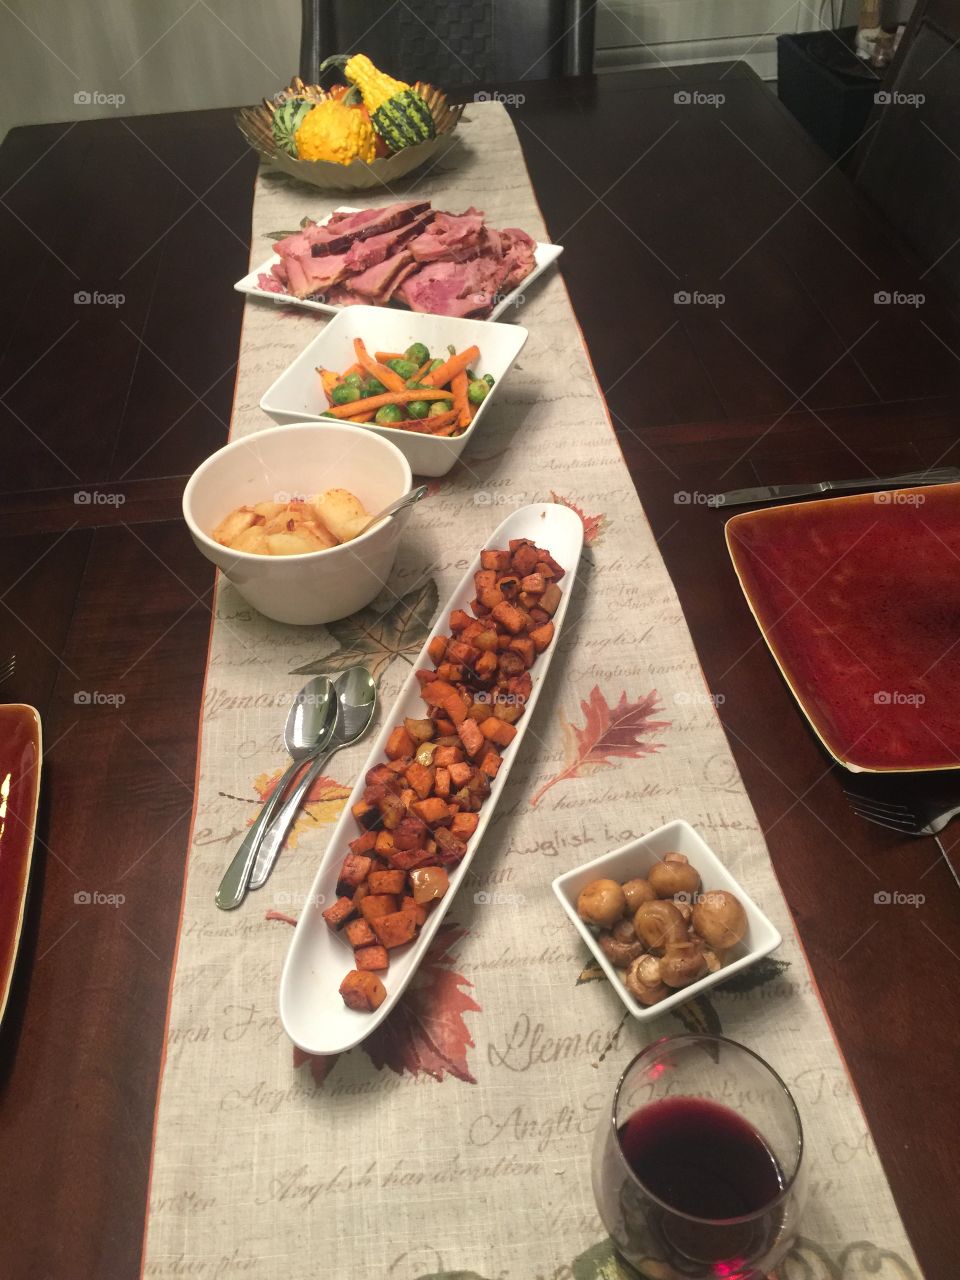 Thanksgiving dinner spread